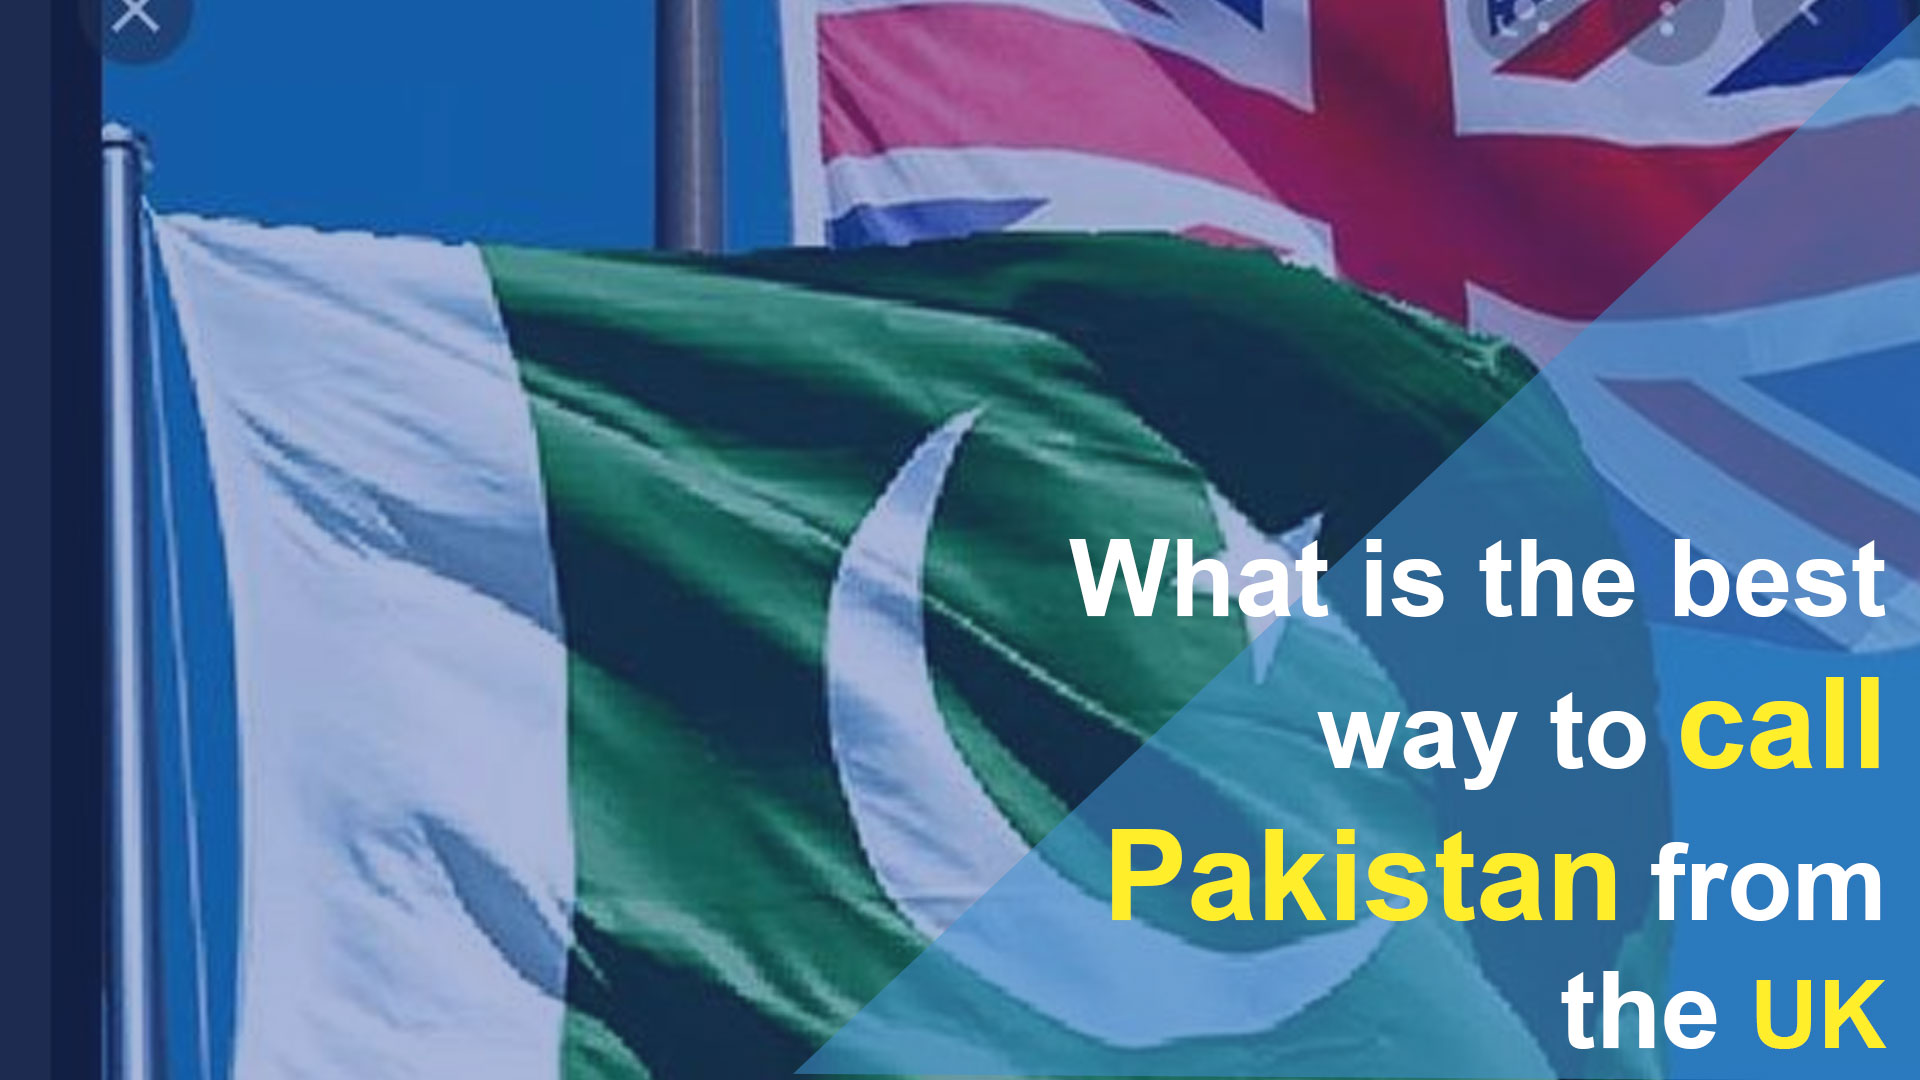 Wie kann man Pakistan am besten aus Großbritannien anrufen?